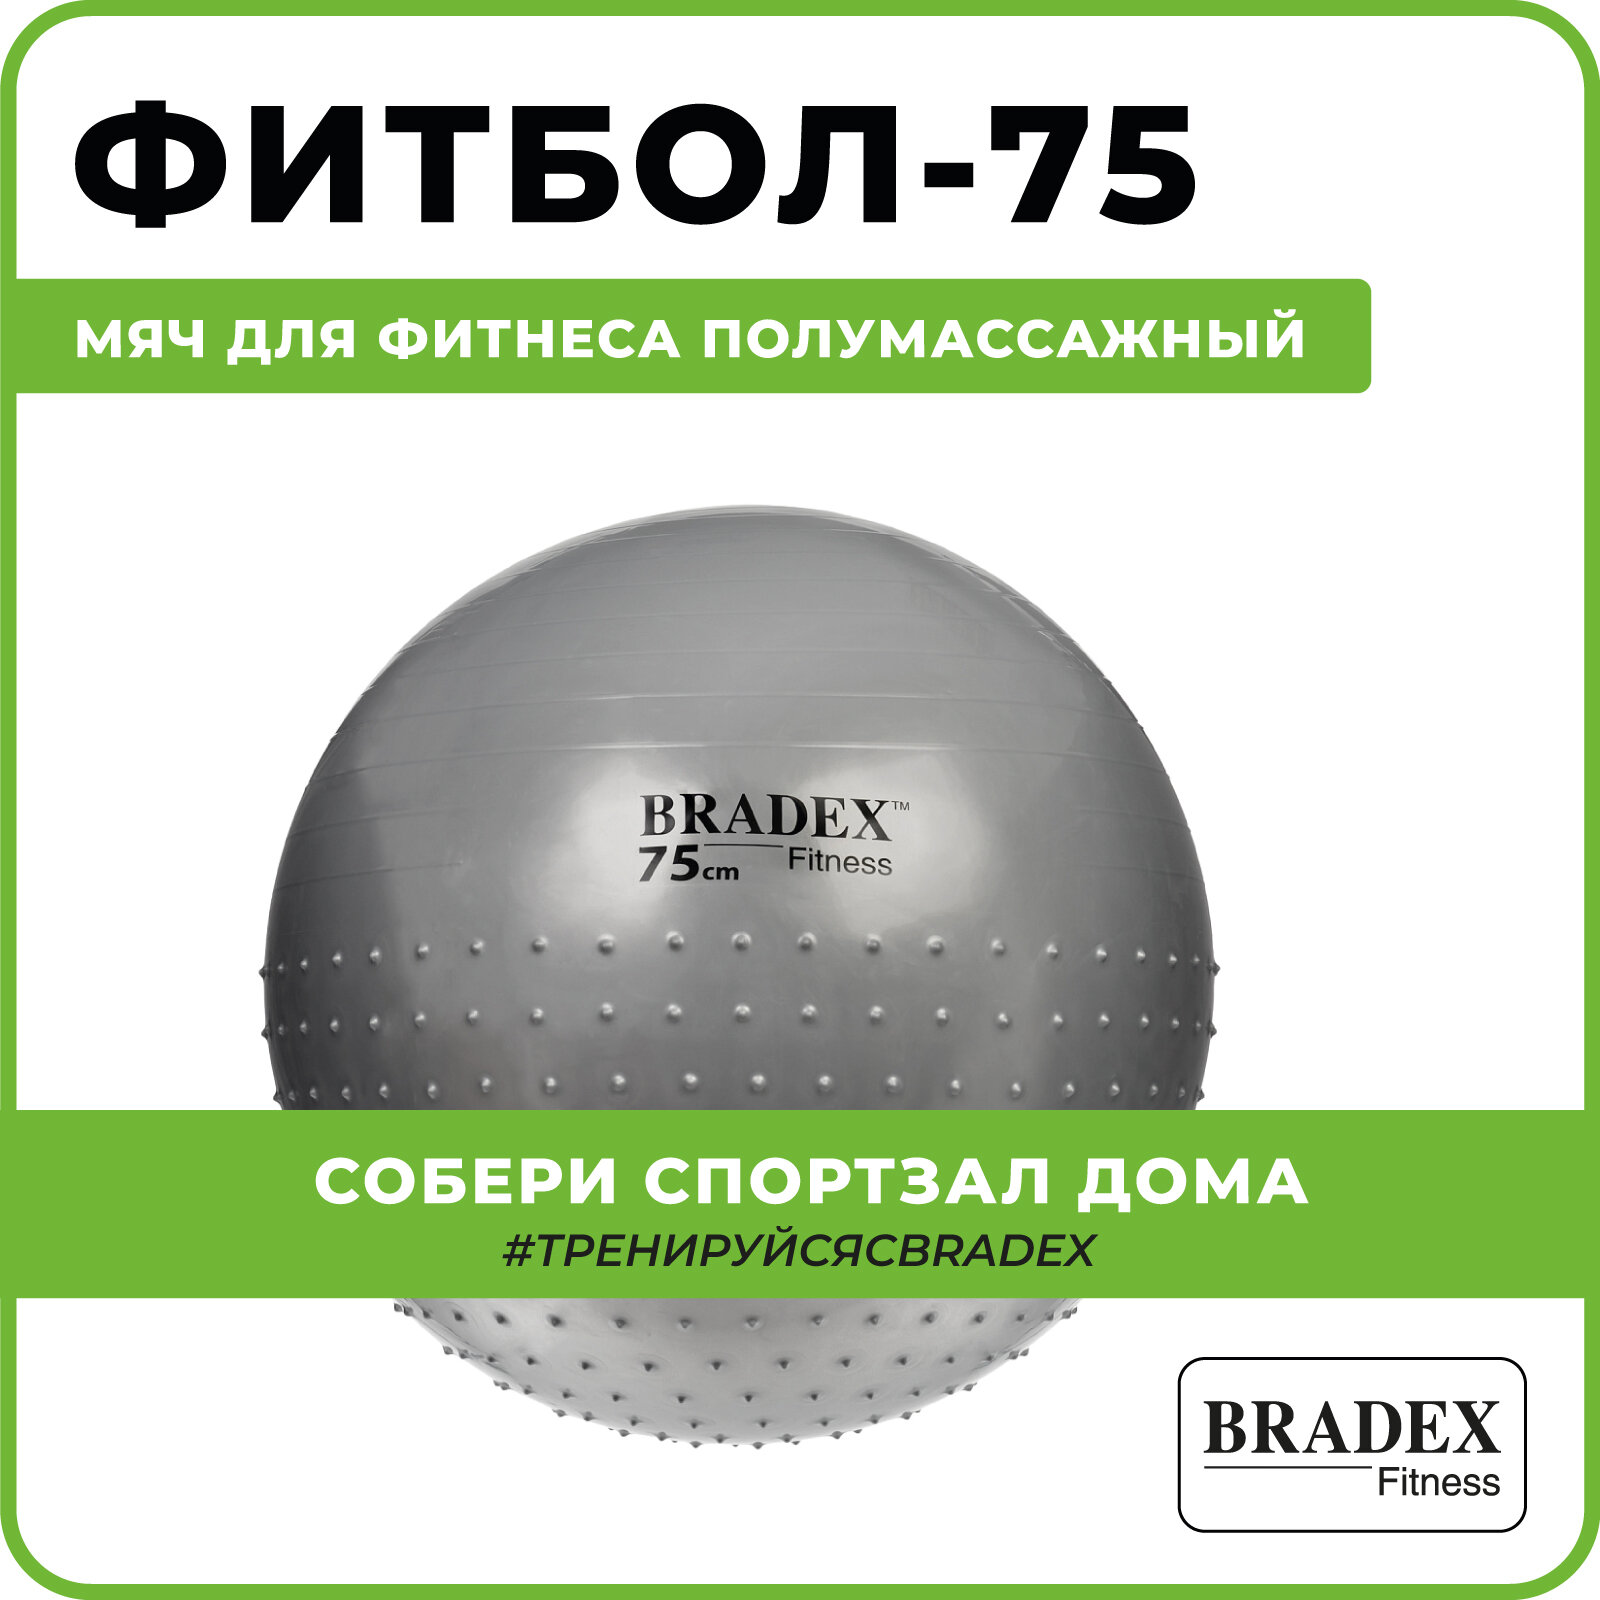 Мяч для фитнеса полумассажный Bradex 75 см